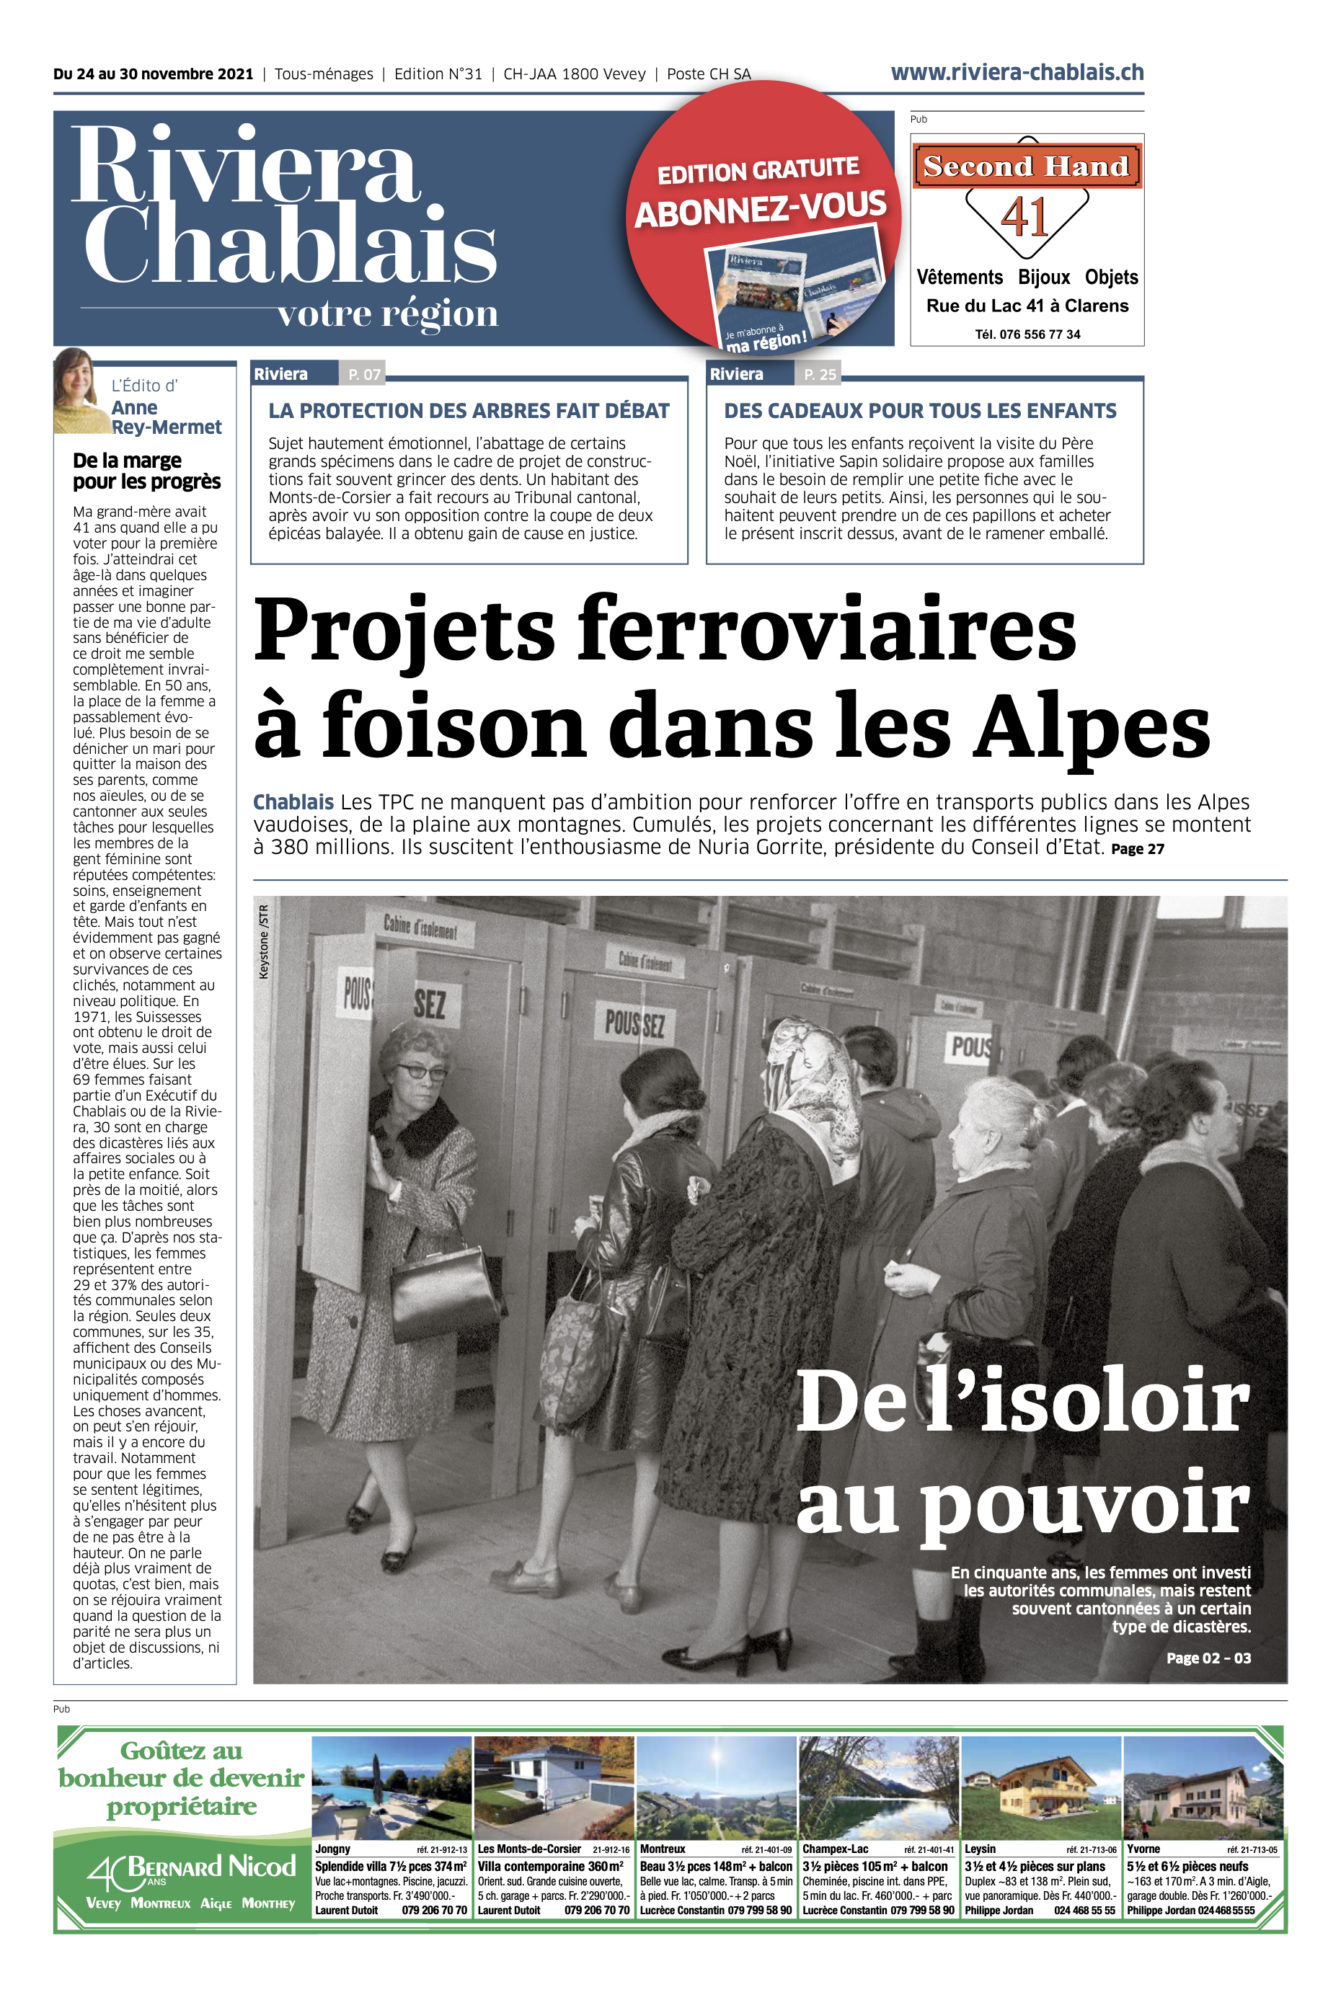 Journal Riviera-Chablais ©Dessin de Gilles,, Article sur Boris Wastiau pour le 24 novembre 2021 page 1